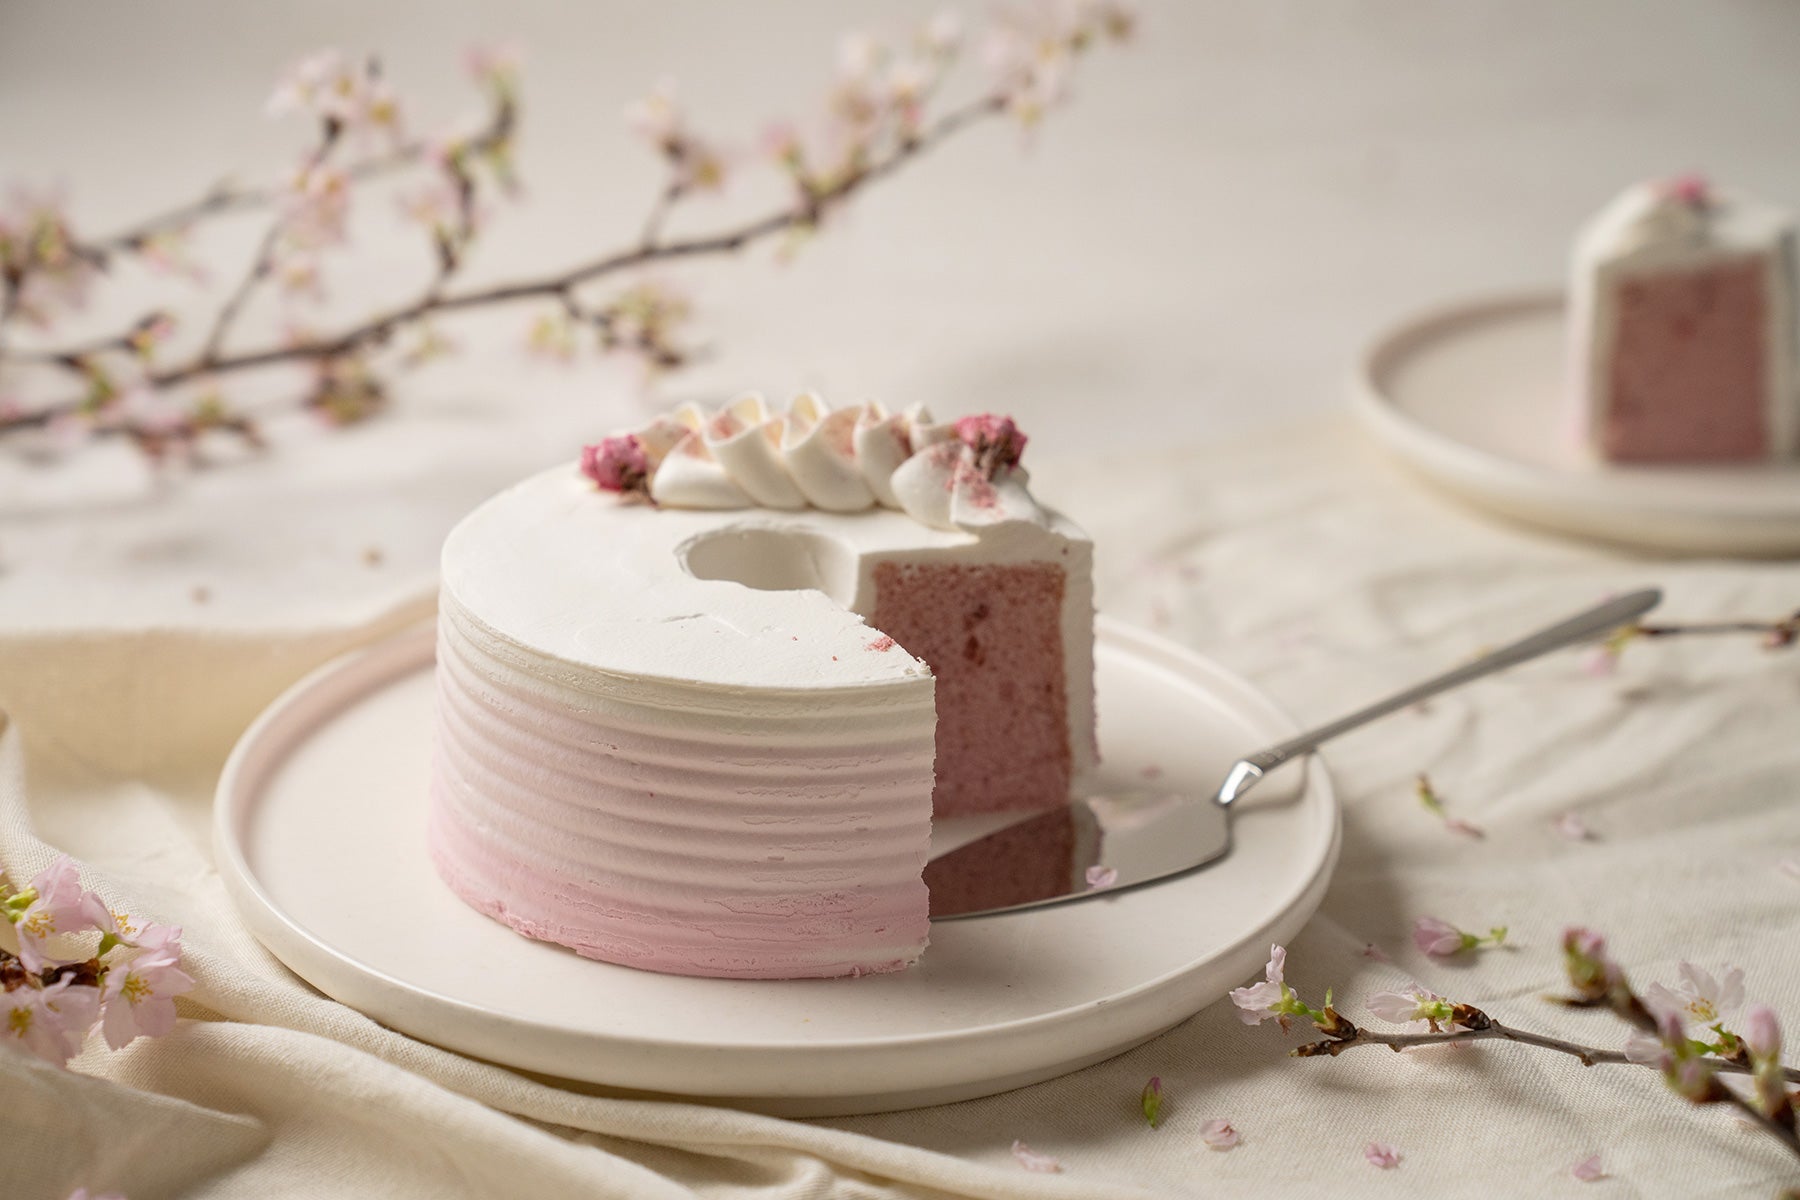 シフォンケーキ専門オンラインストア「This is CHIFFON CAKE. 」春限定桜シフォンケーキ